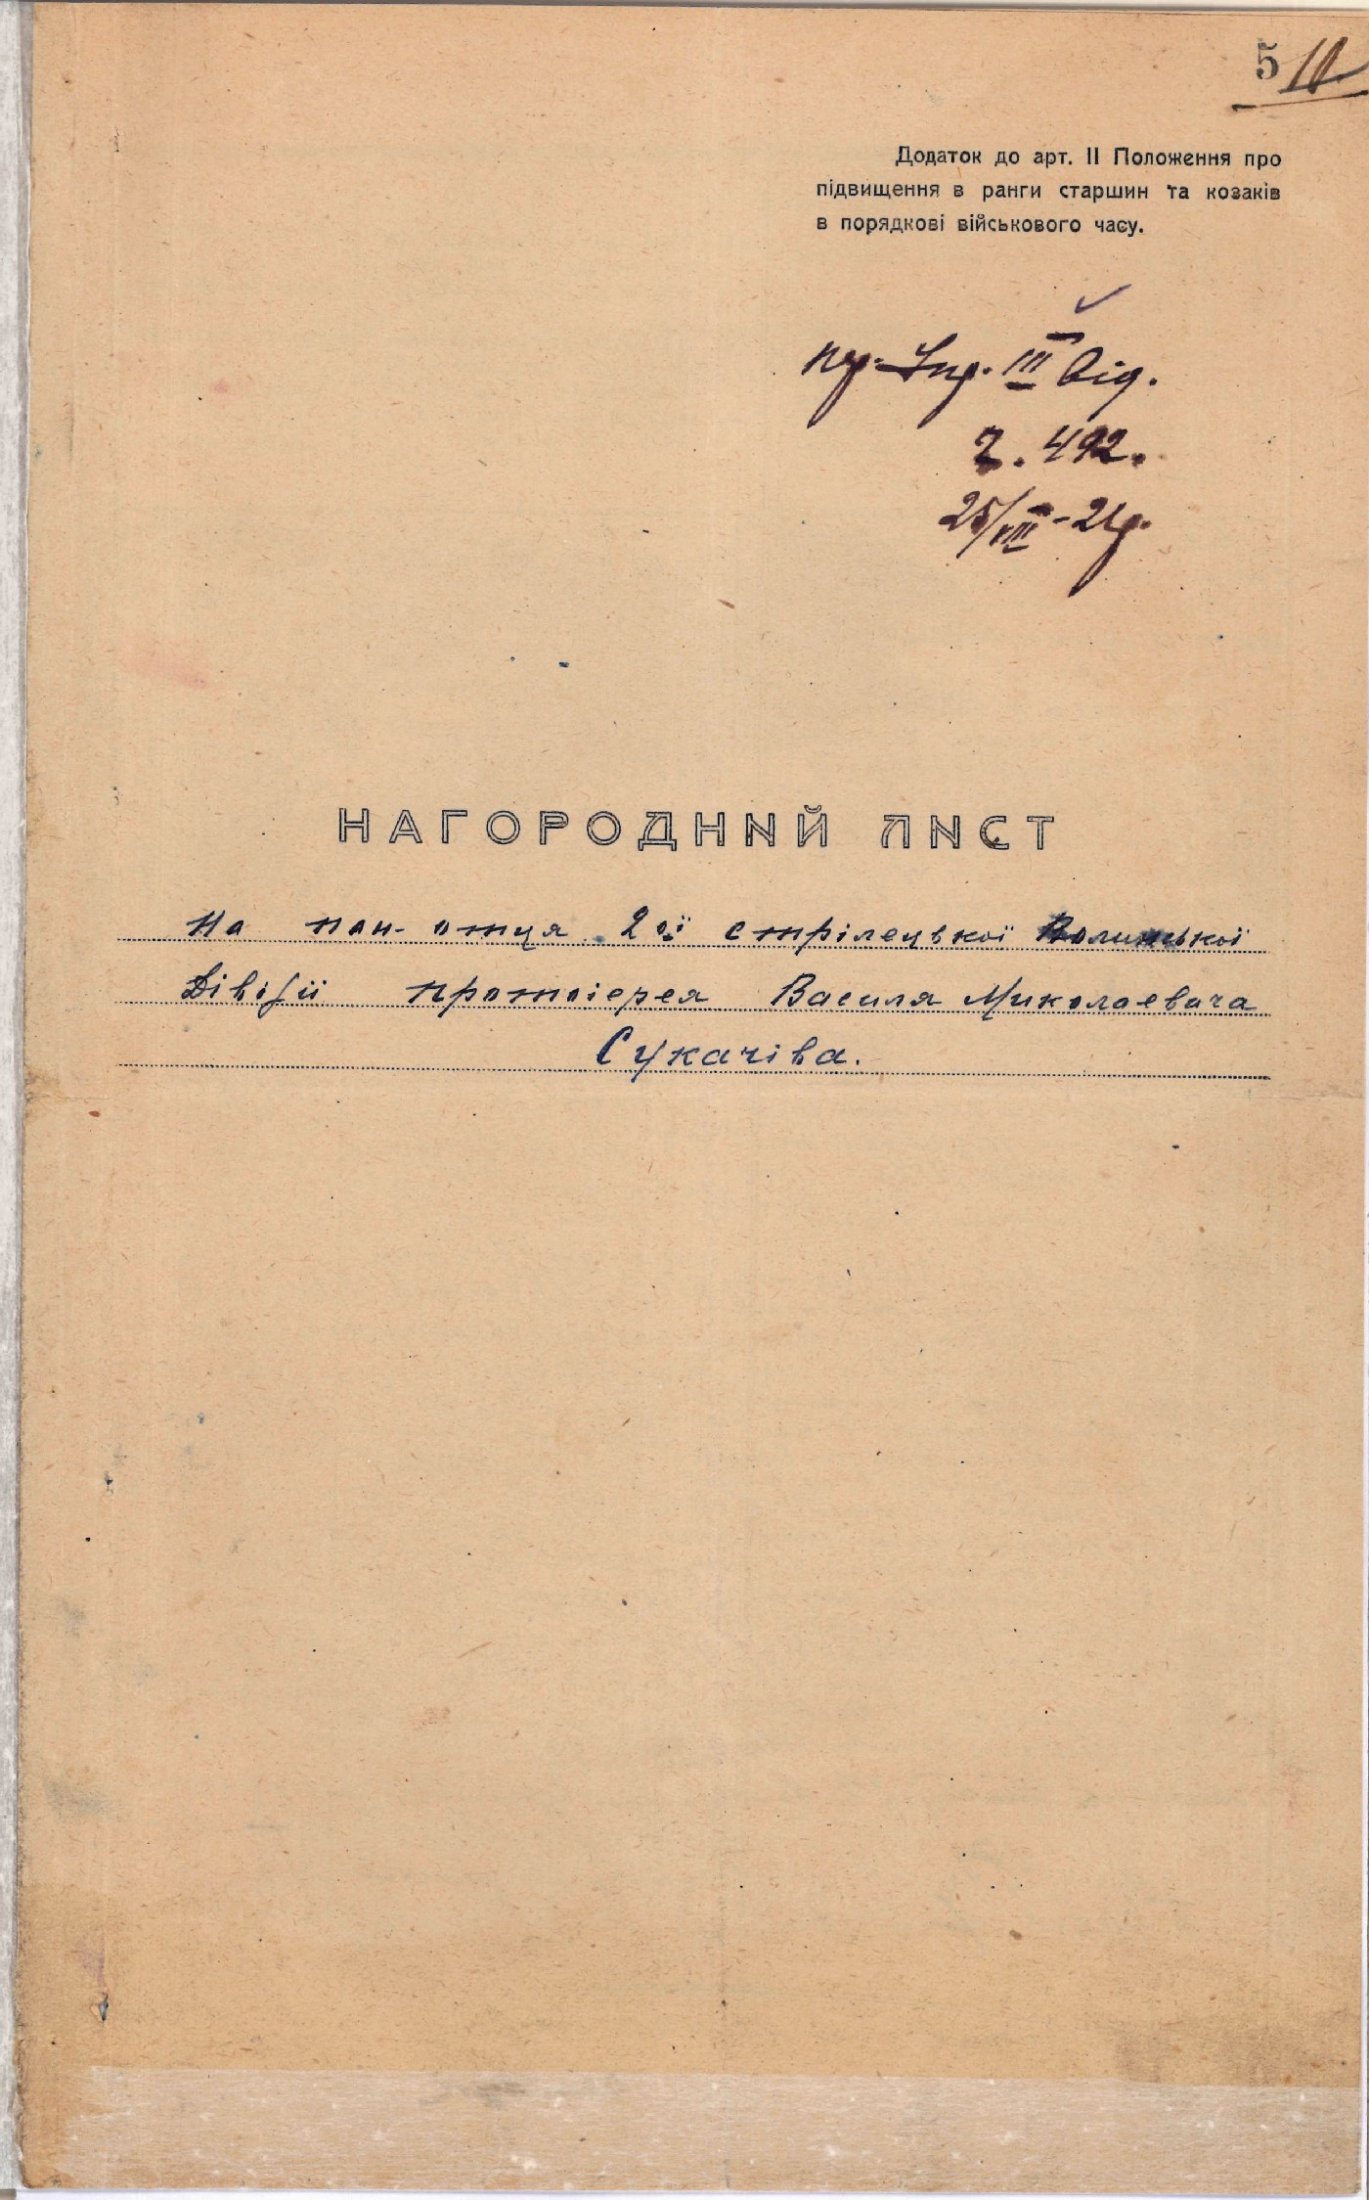 Нагородний лист на священика 2-ої стрілецької Волинської дивізії протоієрея В. Сукачіва - учасника Першого Зимового походу. 25 серпня 1921 р. 